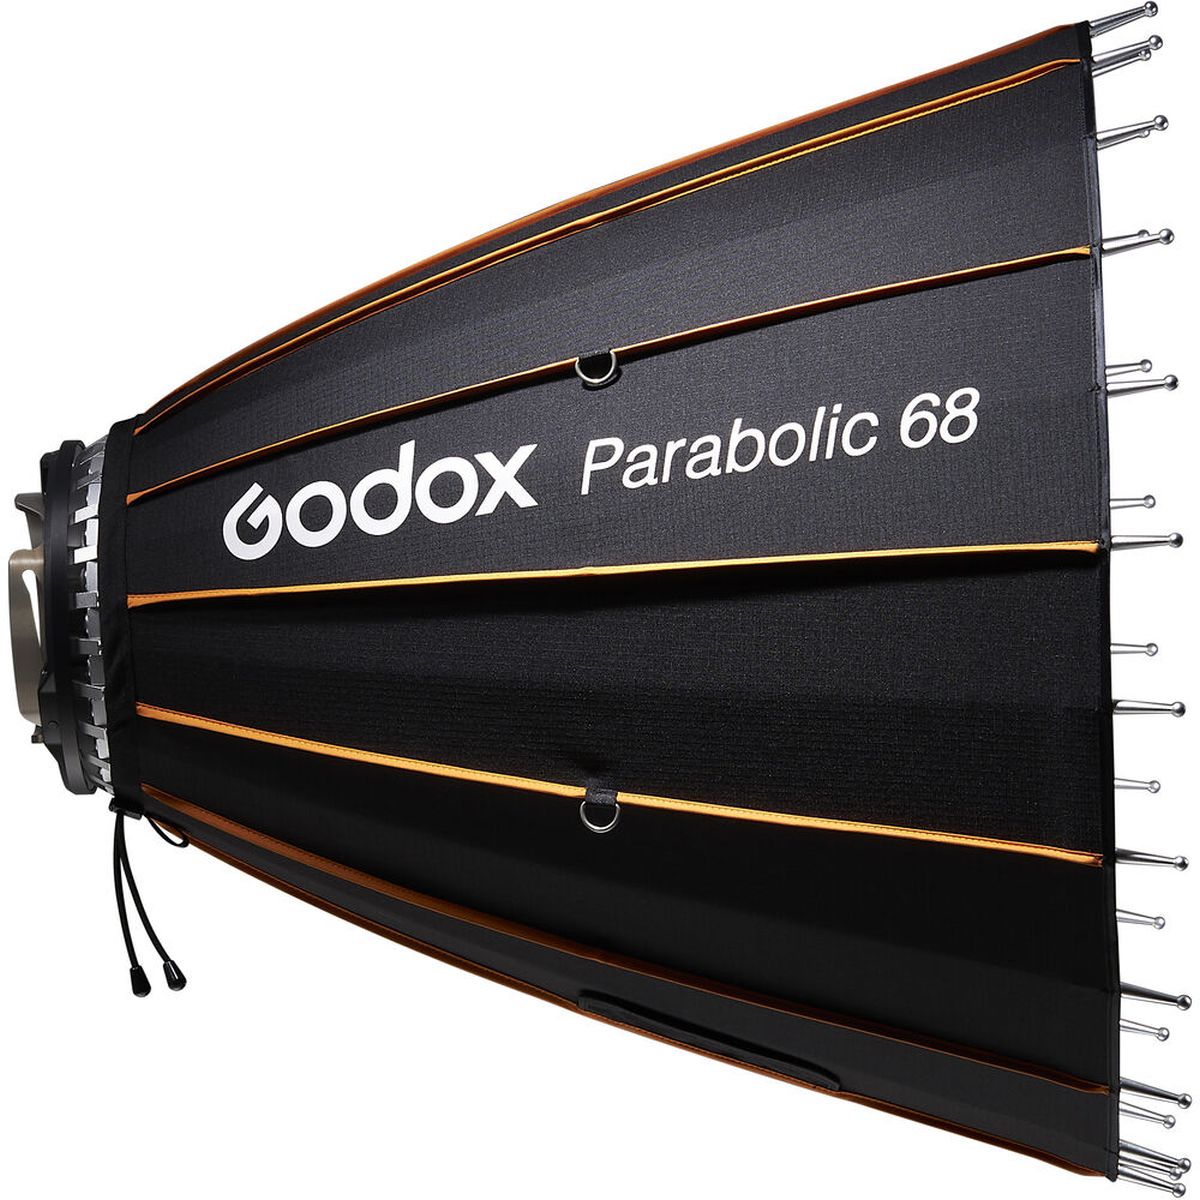 Godox Parabolreflektor 68